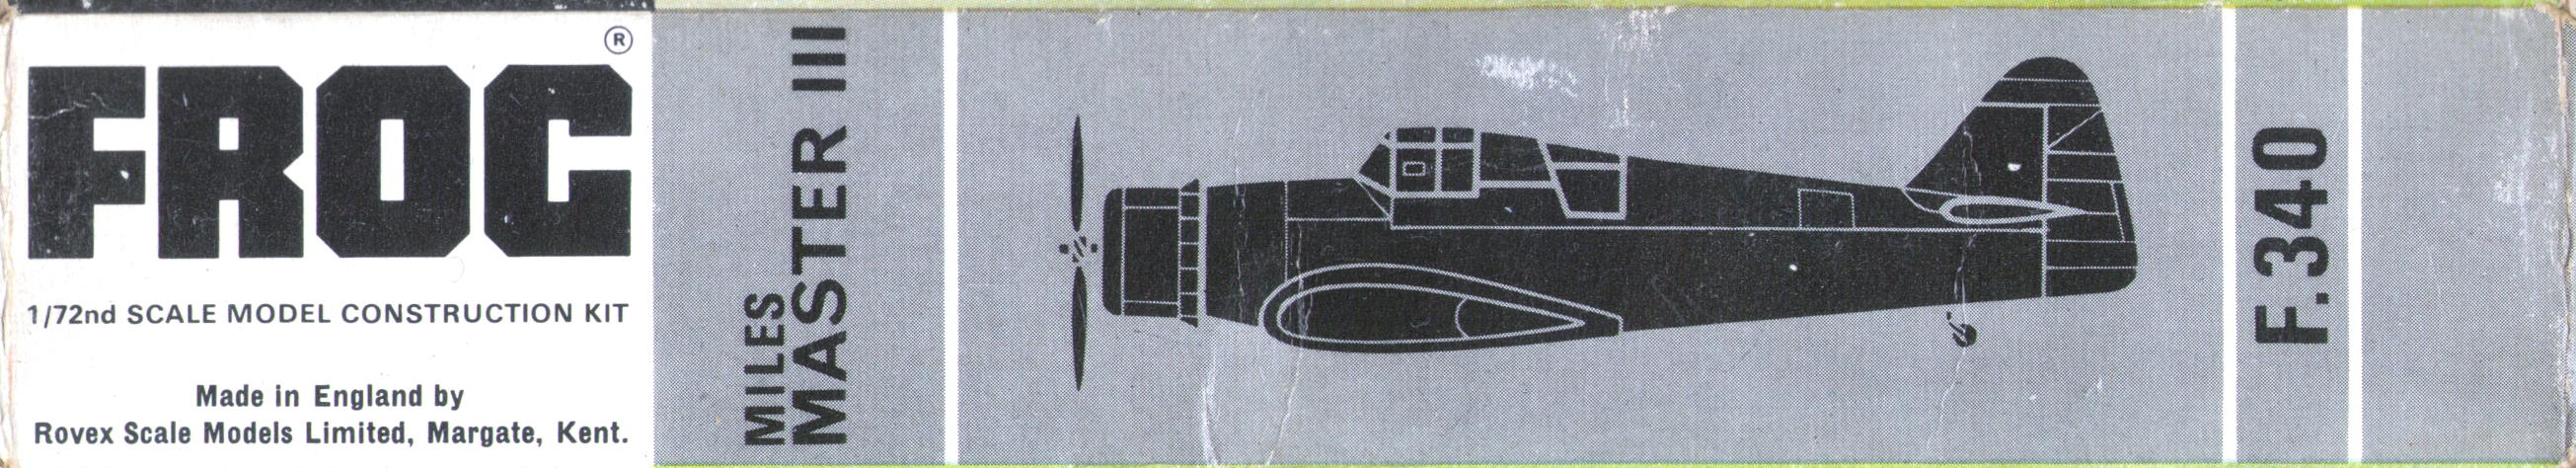 Коробка FROG F340 Miles Master, чёрная серия 1965